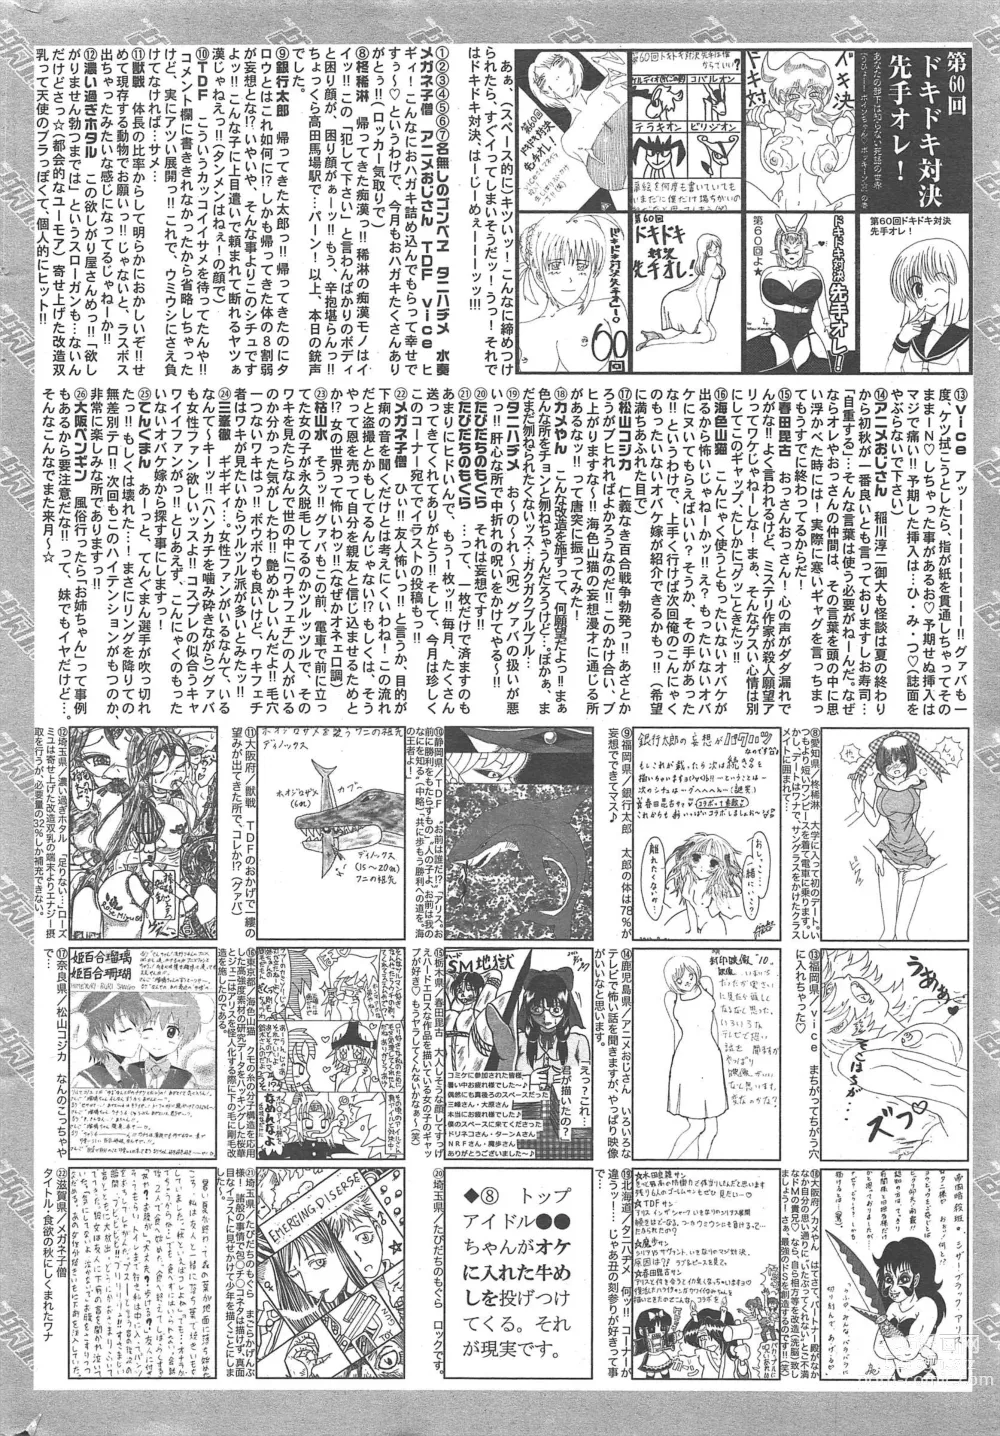 Page 319 of manga Manga Bangaichi 2012-11